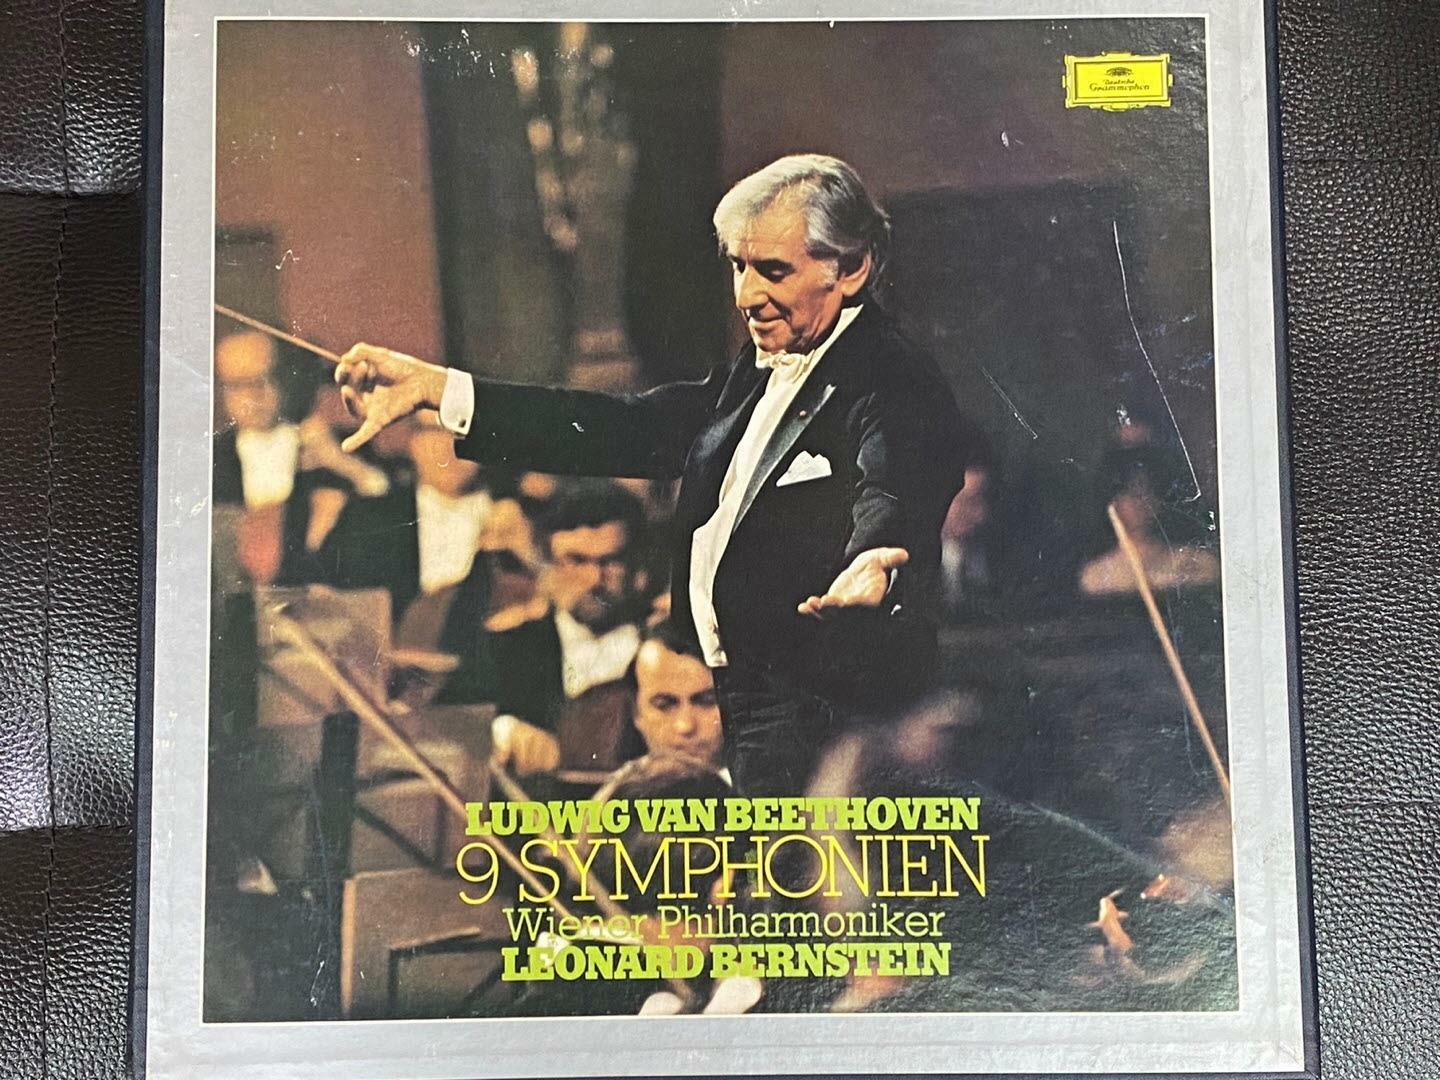 [중고] [LP] 레너드 번스타인 - Leonard Bernstein - Beethoven 9 Symphonien 8Lps [Box] [성음-라이센스반]